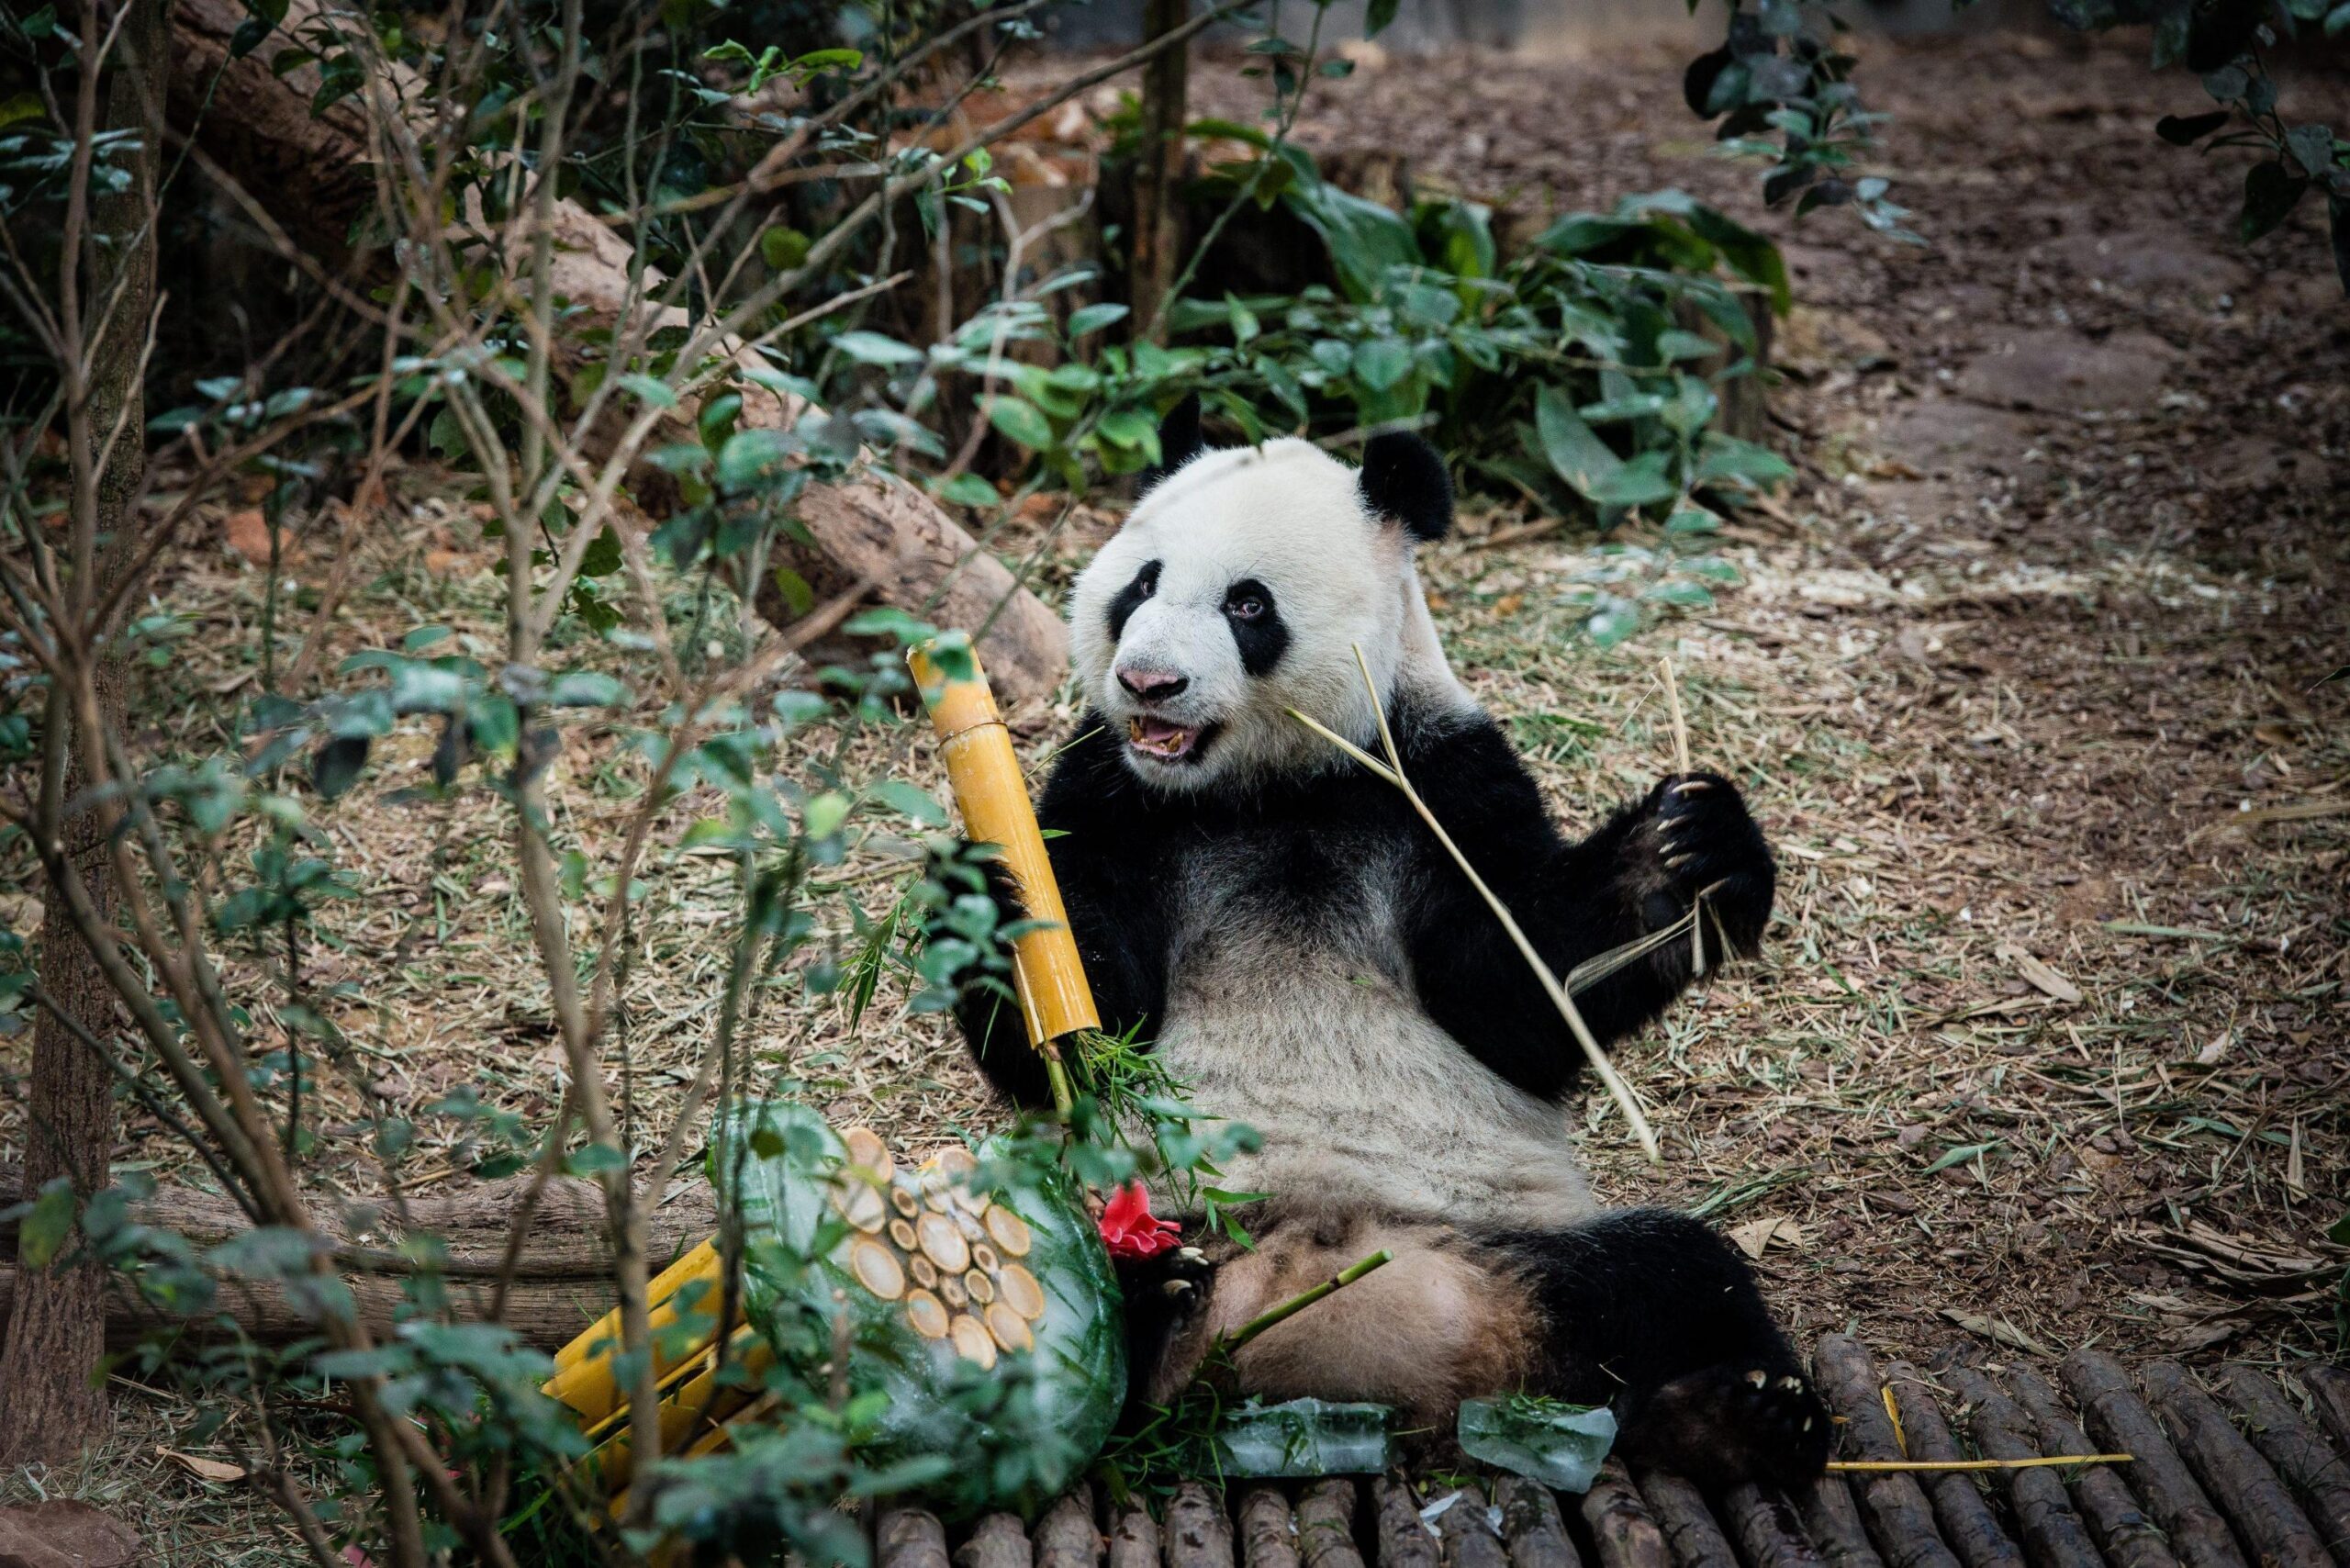 I due panda compiono gli anni e festeggiano con la torta di bamboo03